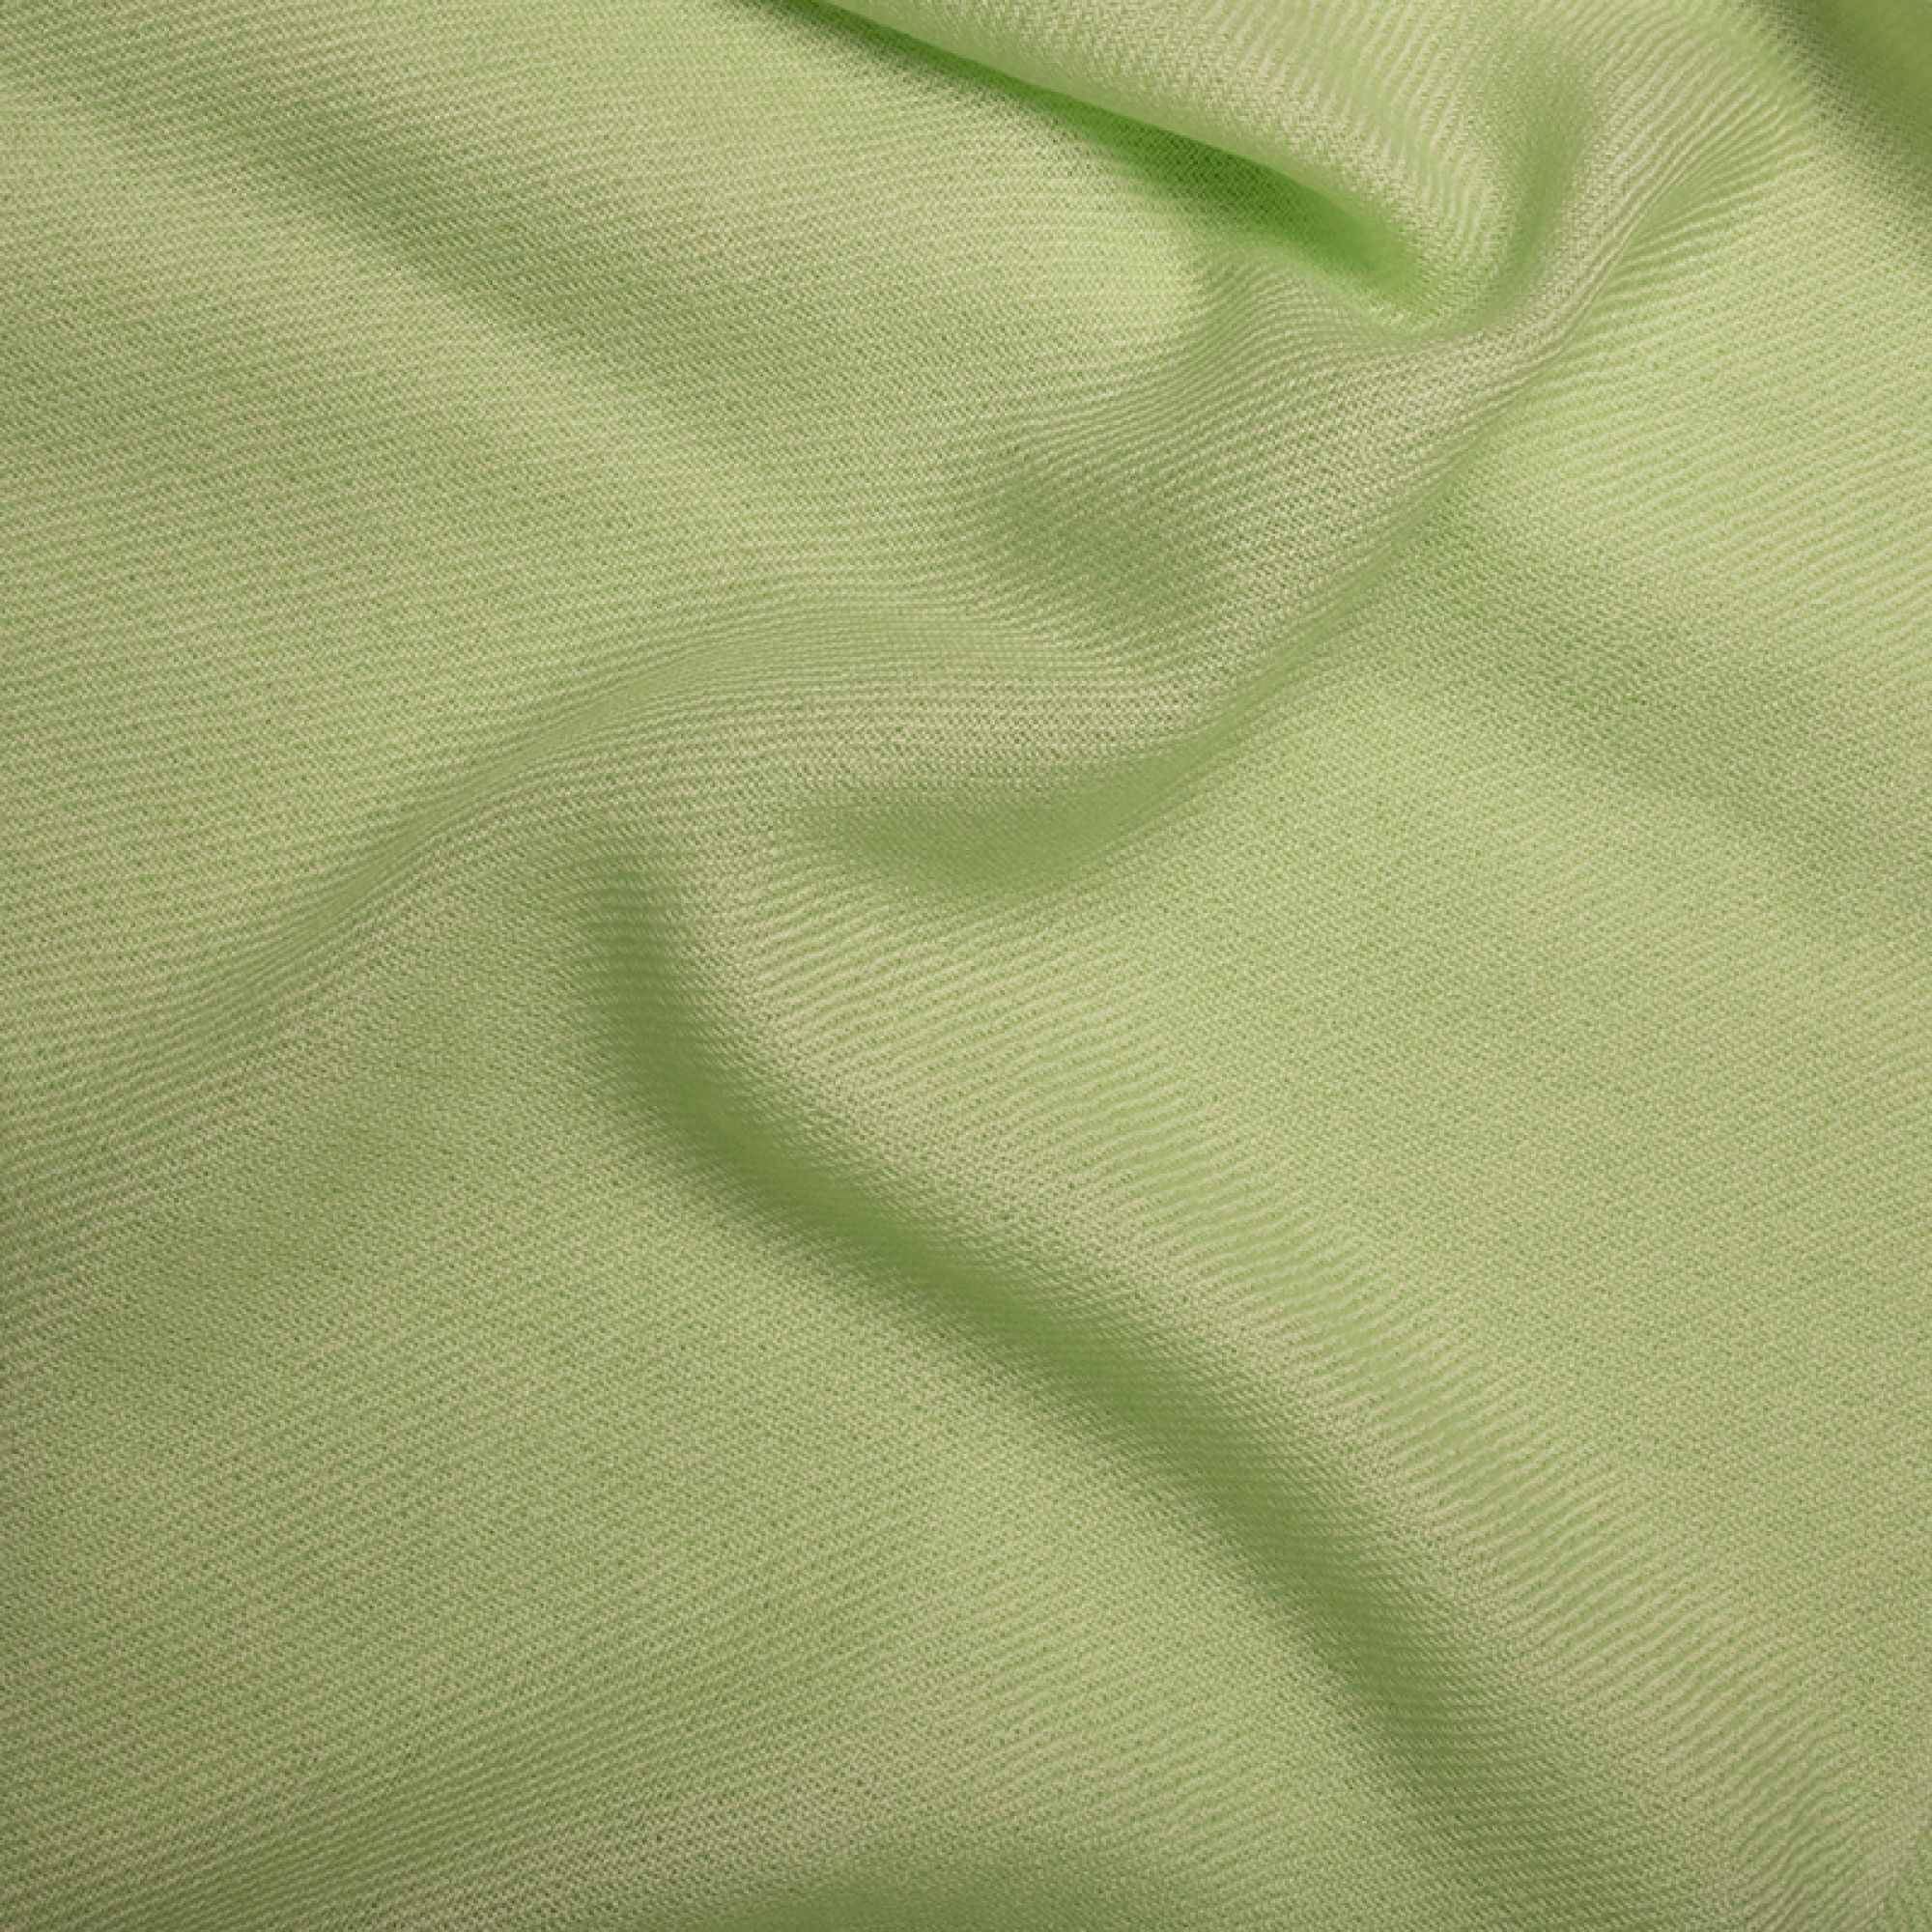 Cashmere accessoires kaschmir plaid decke toodoo plain xl 240 x 260 helles grun 240 x 260 cm